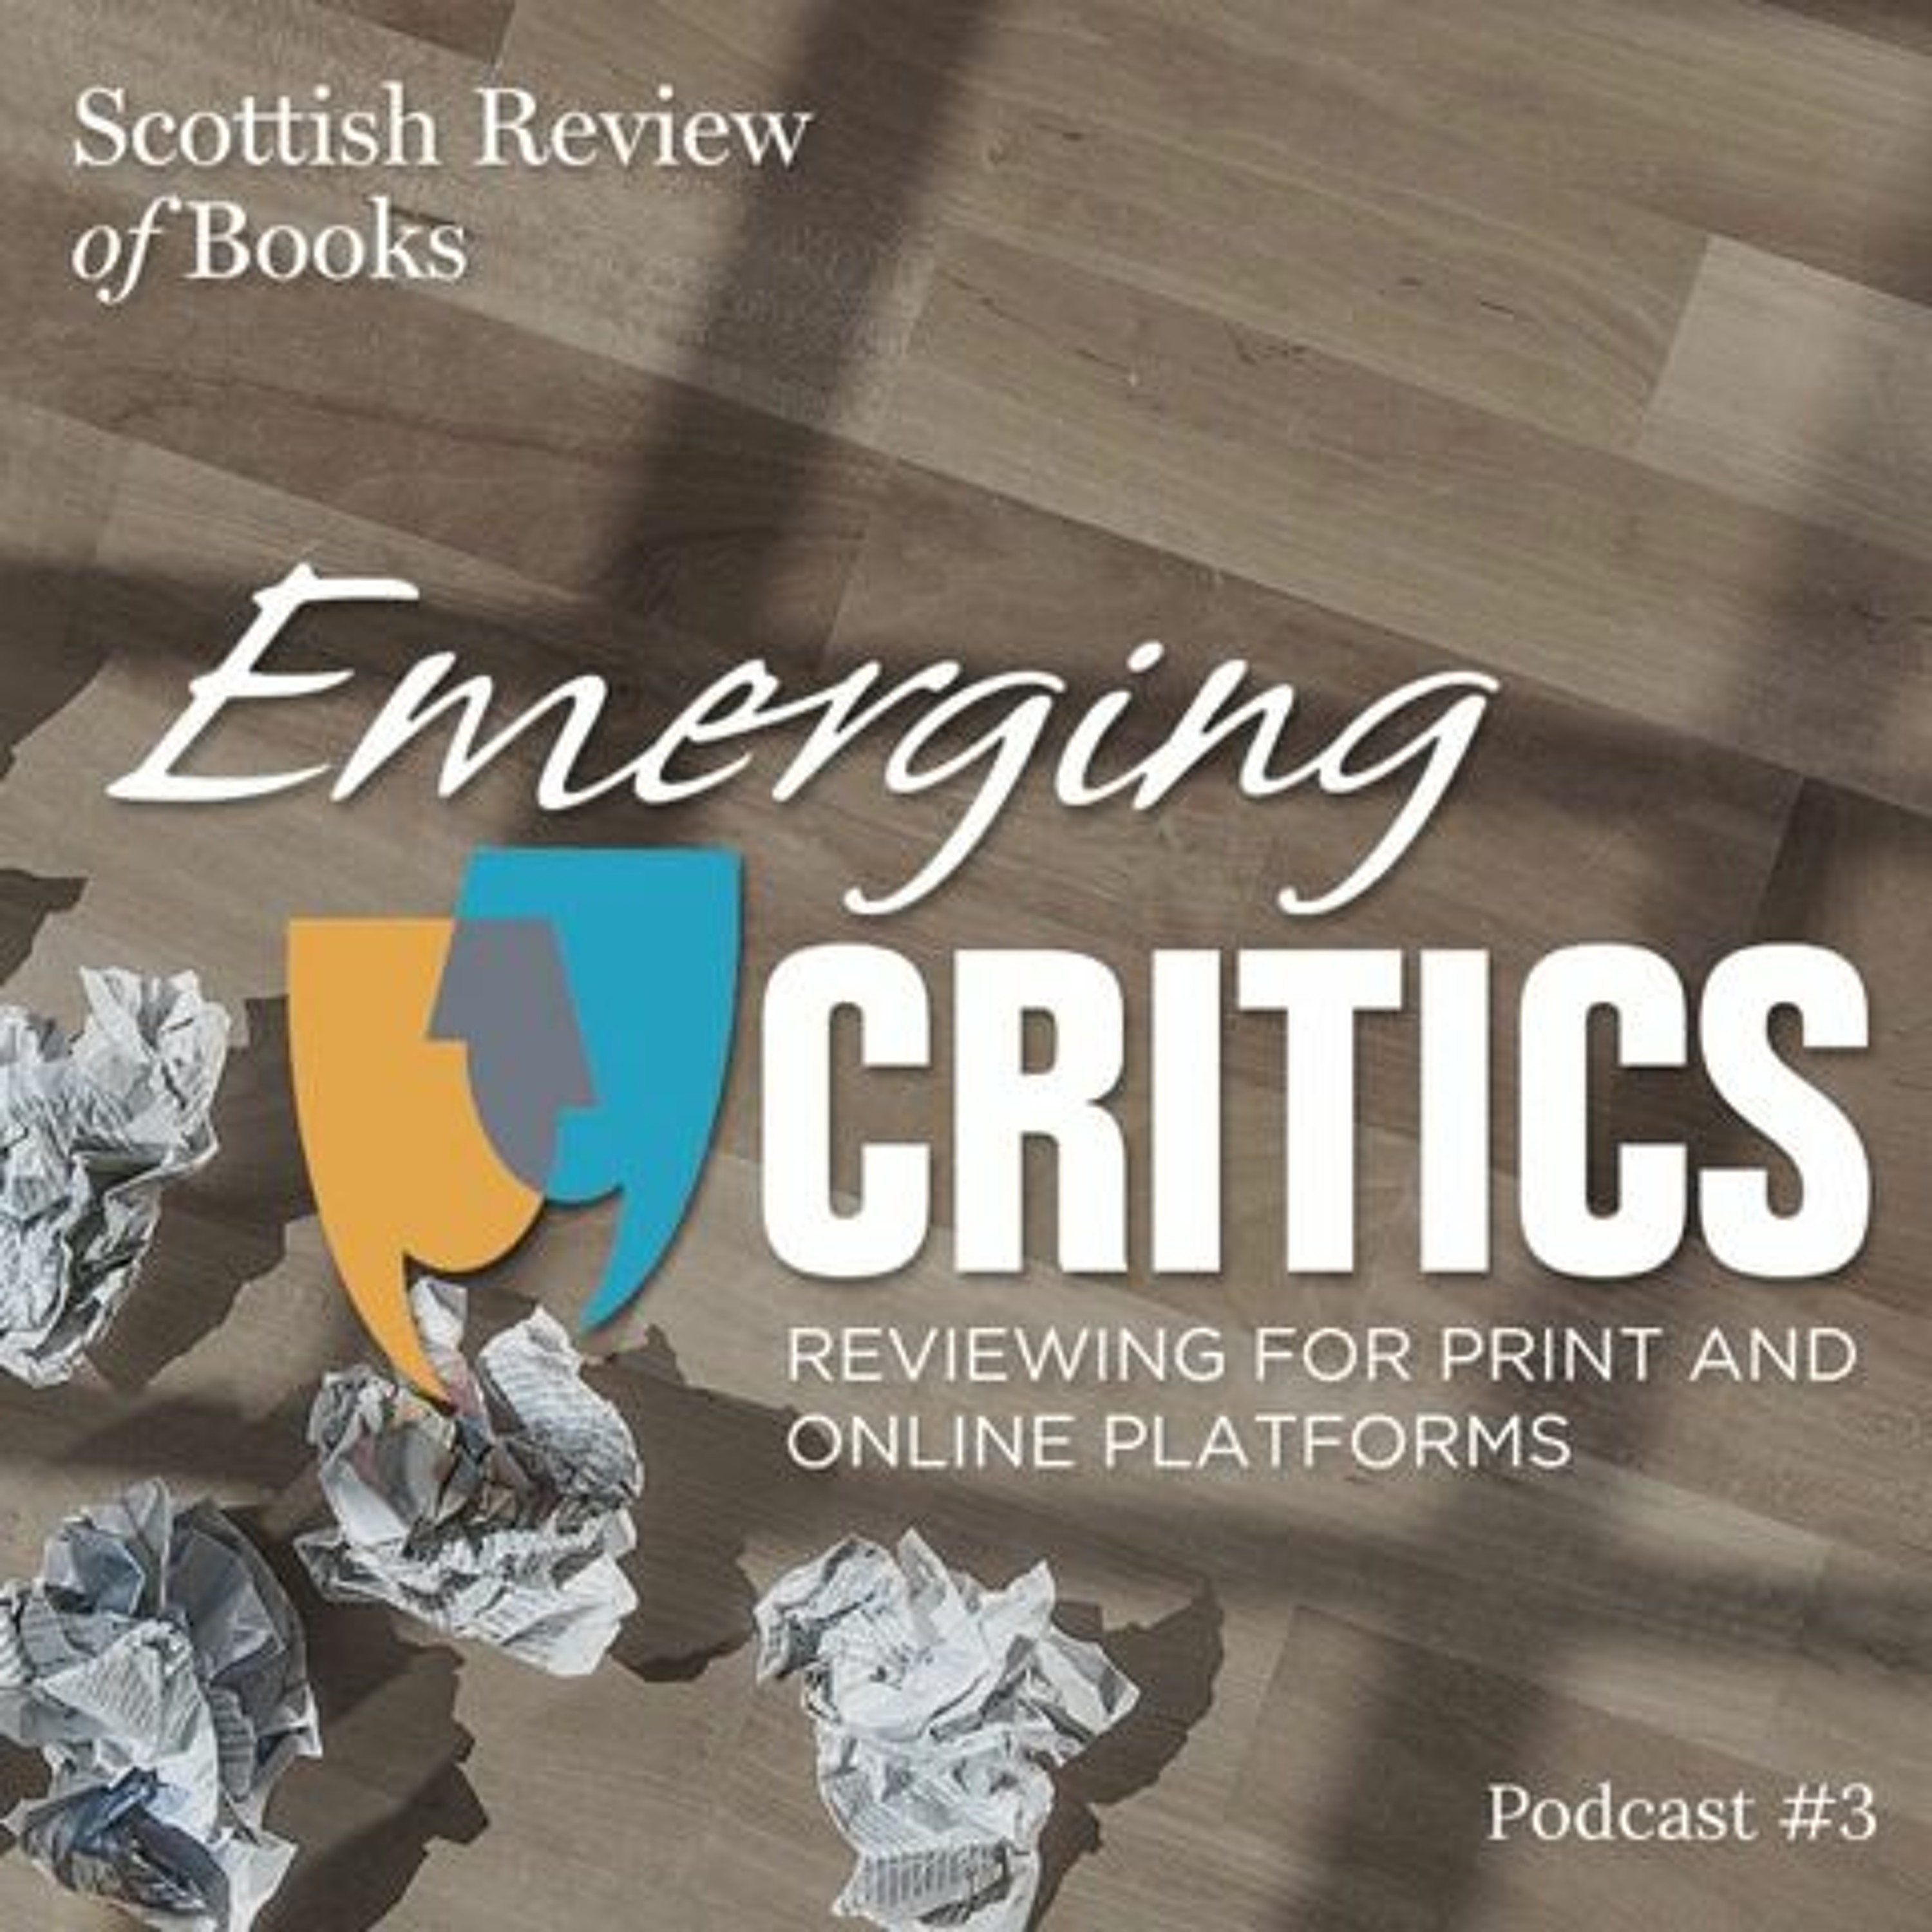 Episode 3 – Emerging Critics, part 3 – Kaite Welsh